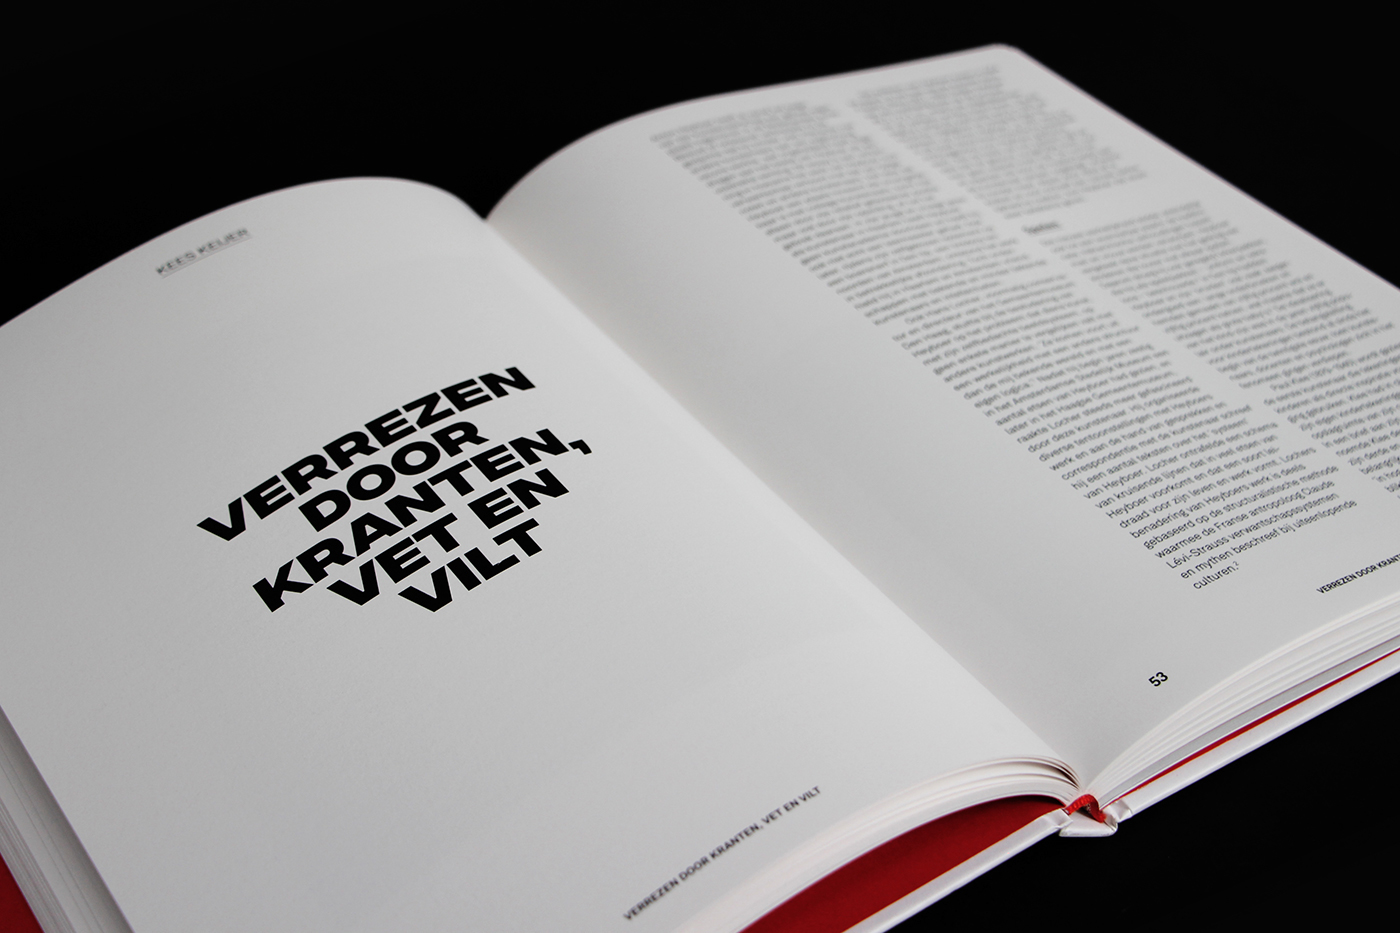 antonheyboer Gemeentemuseum den haag Tim Bisschop book design coverdesign artbook catalog